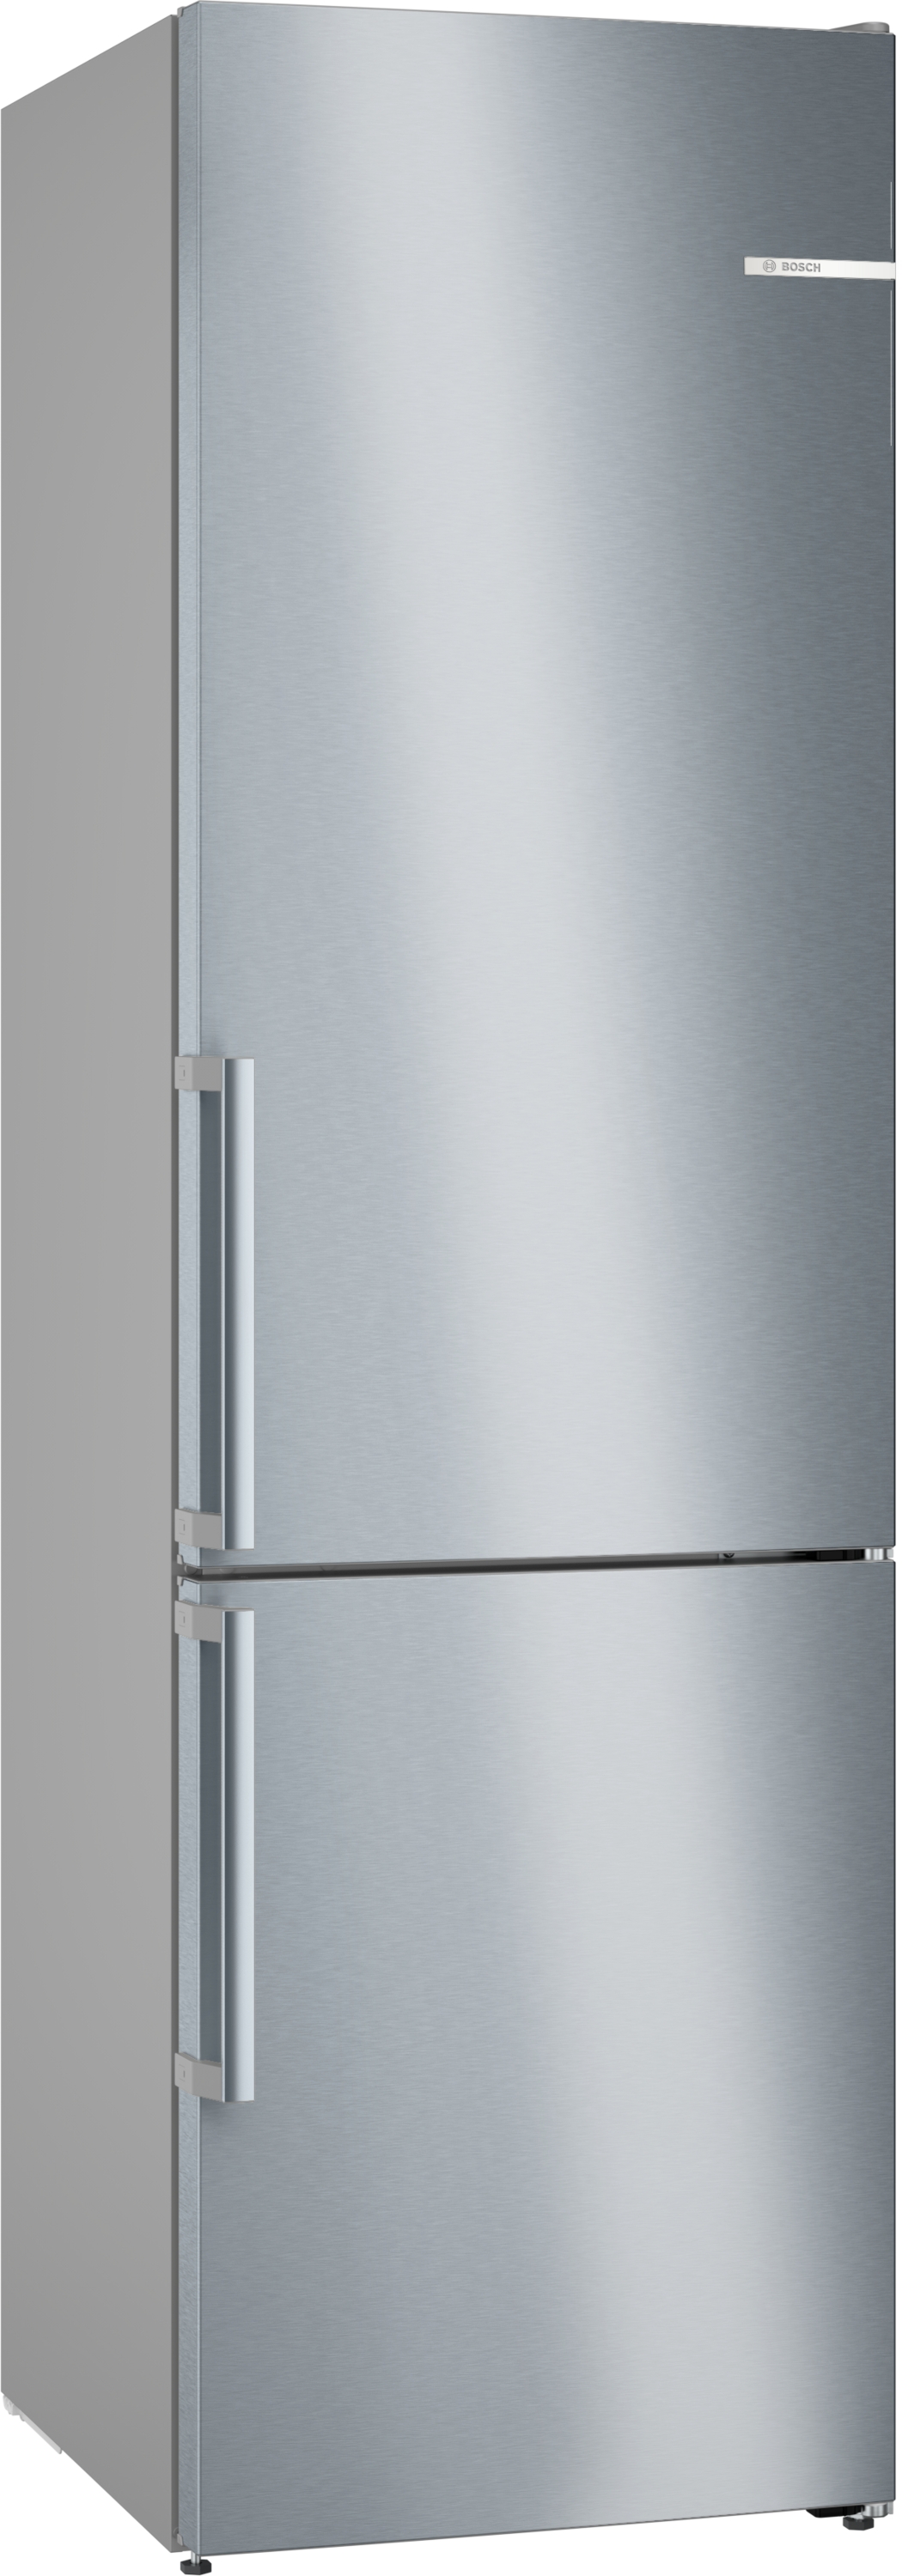 Bosch Serie 6, Freistehende Kühl-Gefrier-Kombination mit Gefrierbereich unten, 203 x 60 cm, Edelstahl (mit Antifingerprint), KGN39AIAT